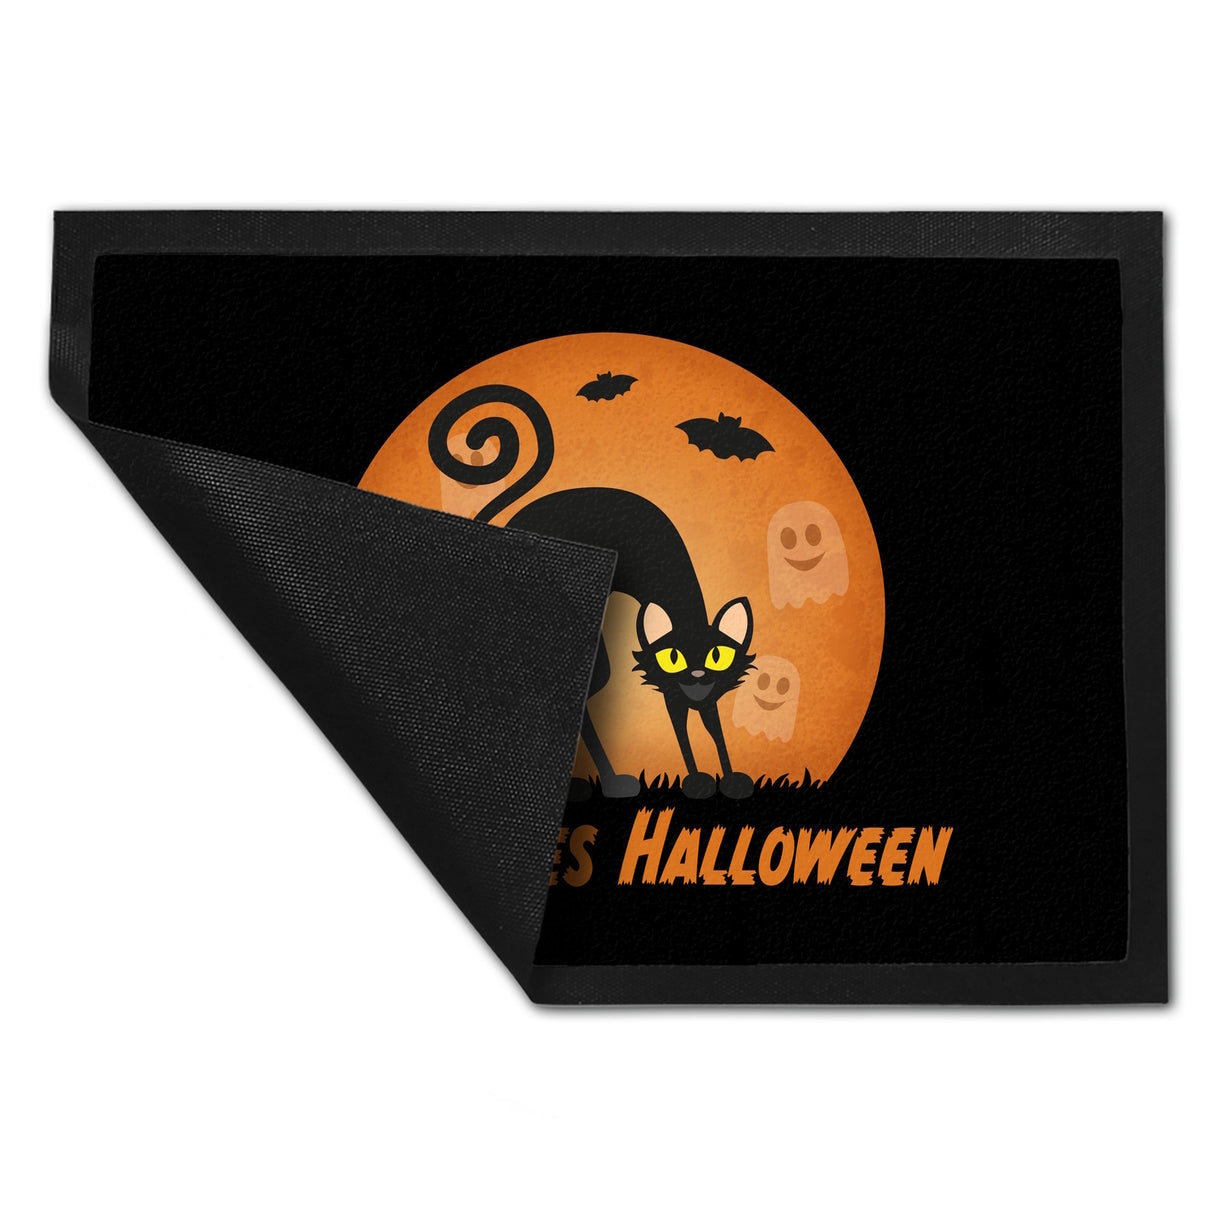 Schauriges Halloween Fußmatte in 35x50 cm mit schwarzer Katze